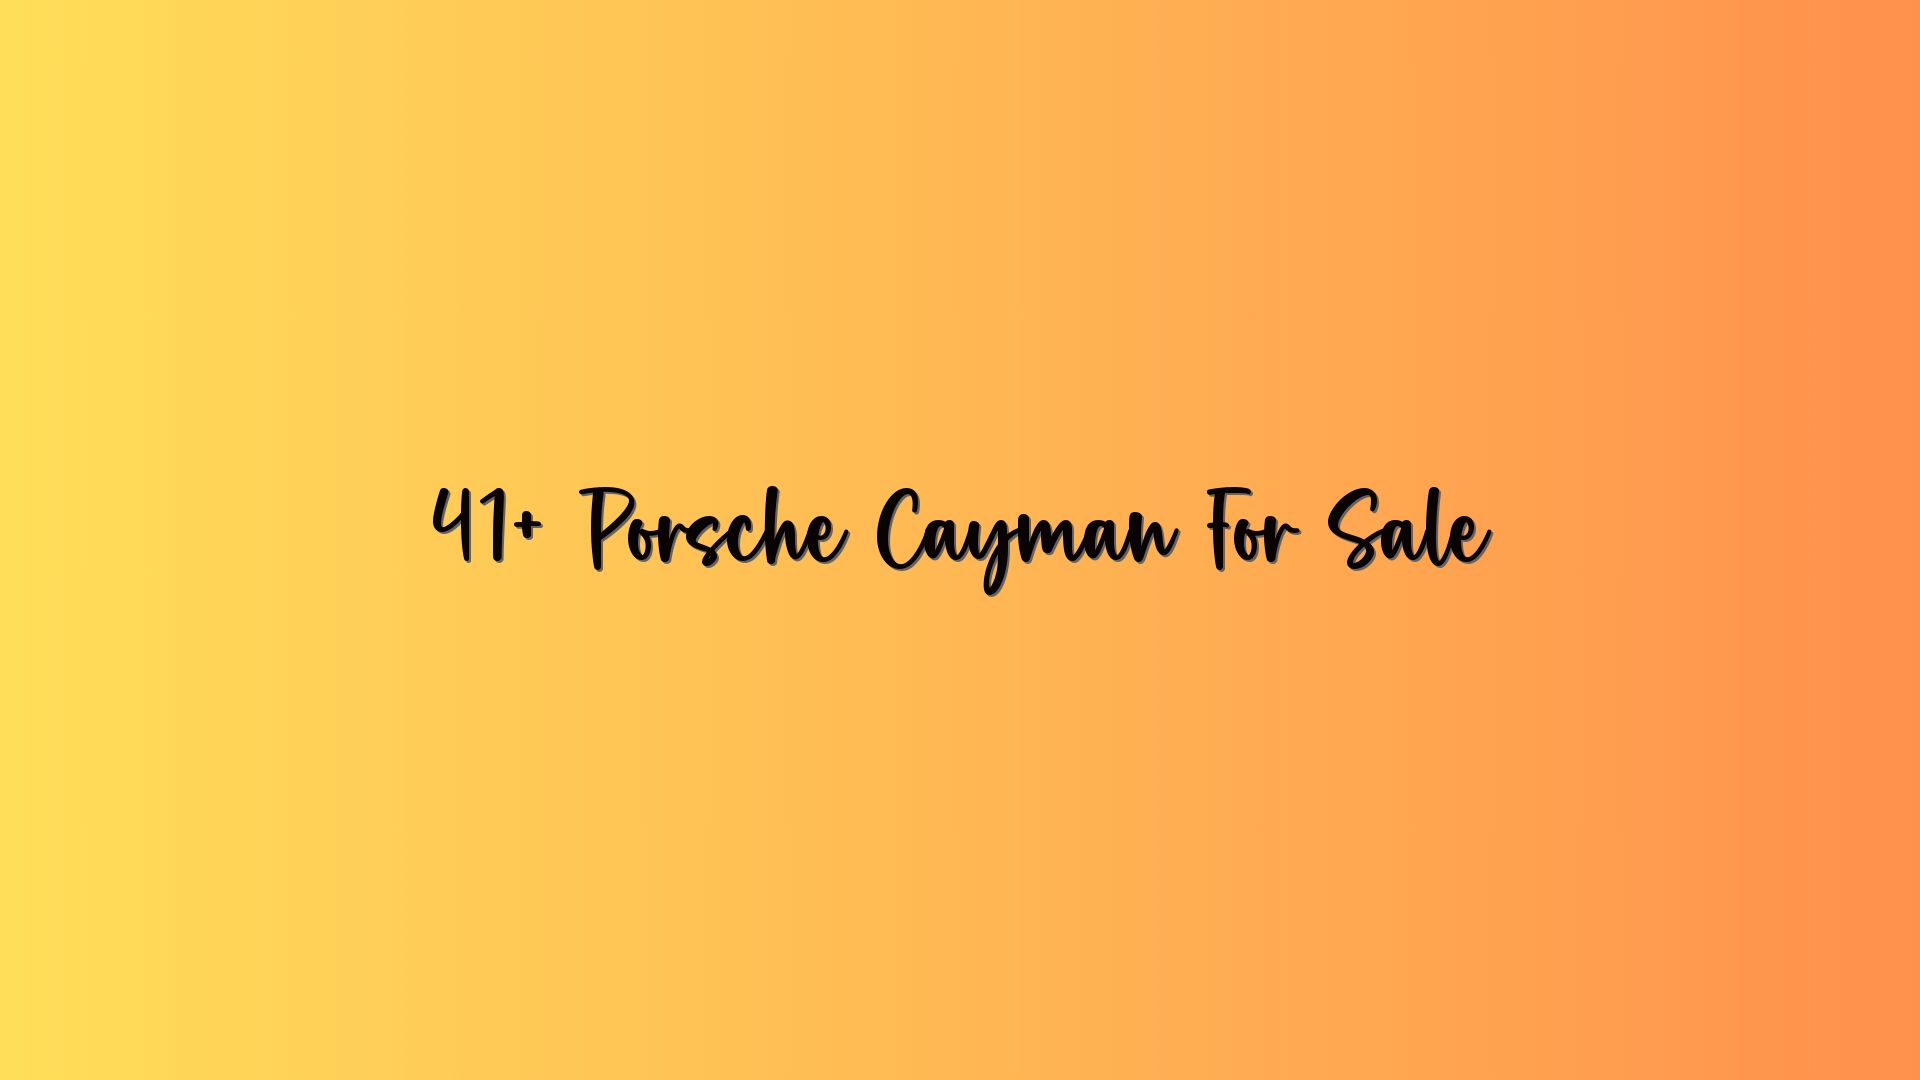 41+ Porsche Cayman For Sale